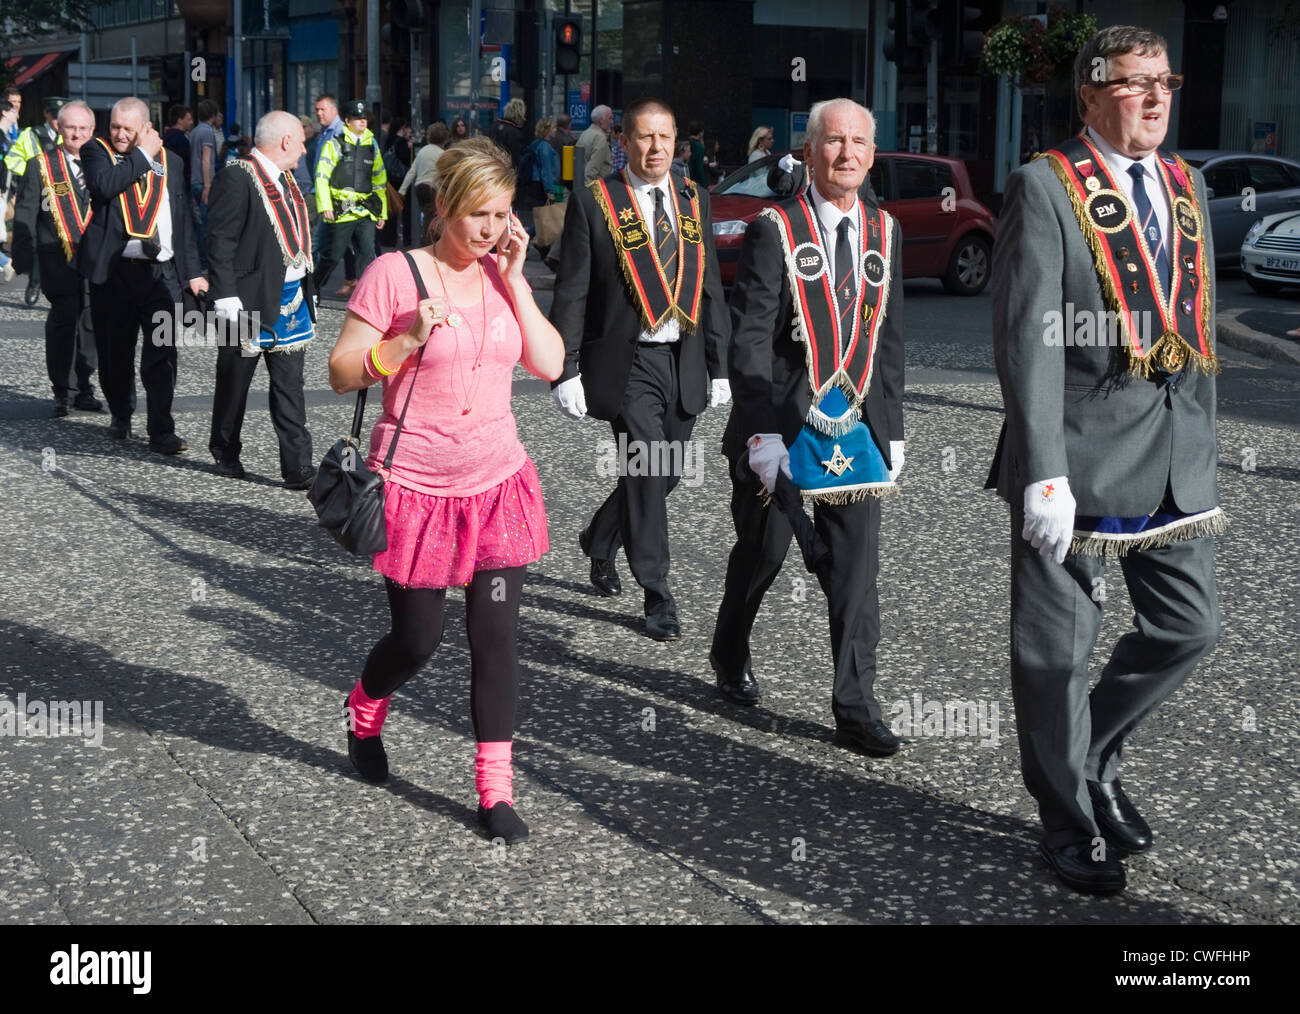 La donna in rosa tra i membri dell'Ordine di Orange, Donegall Square a sud di Belfast. Foto Stock